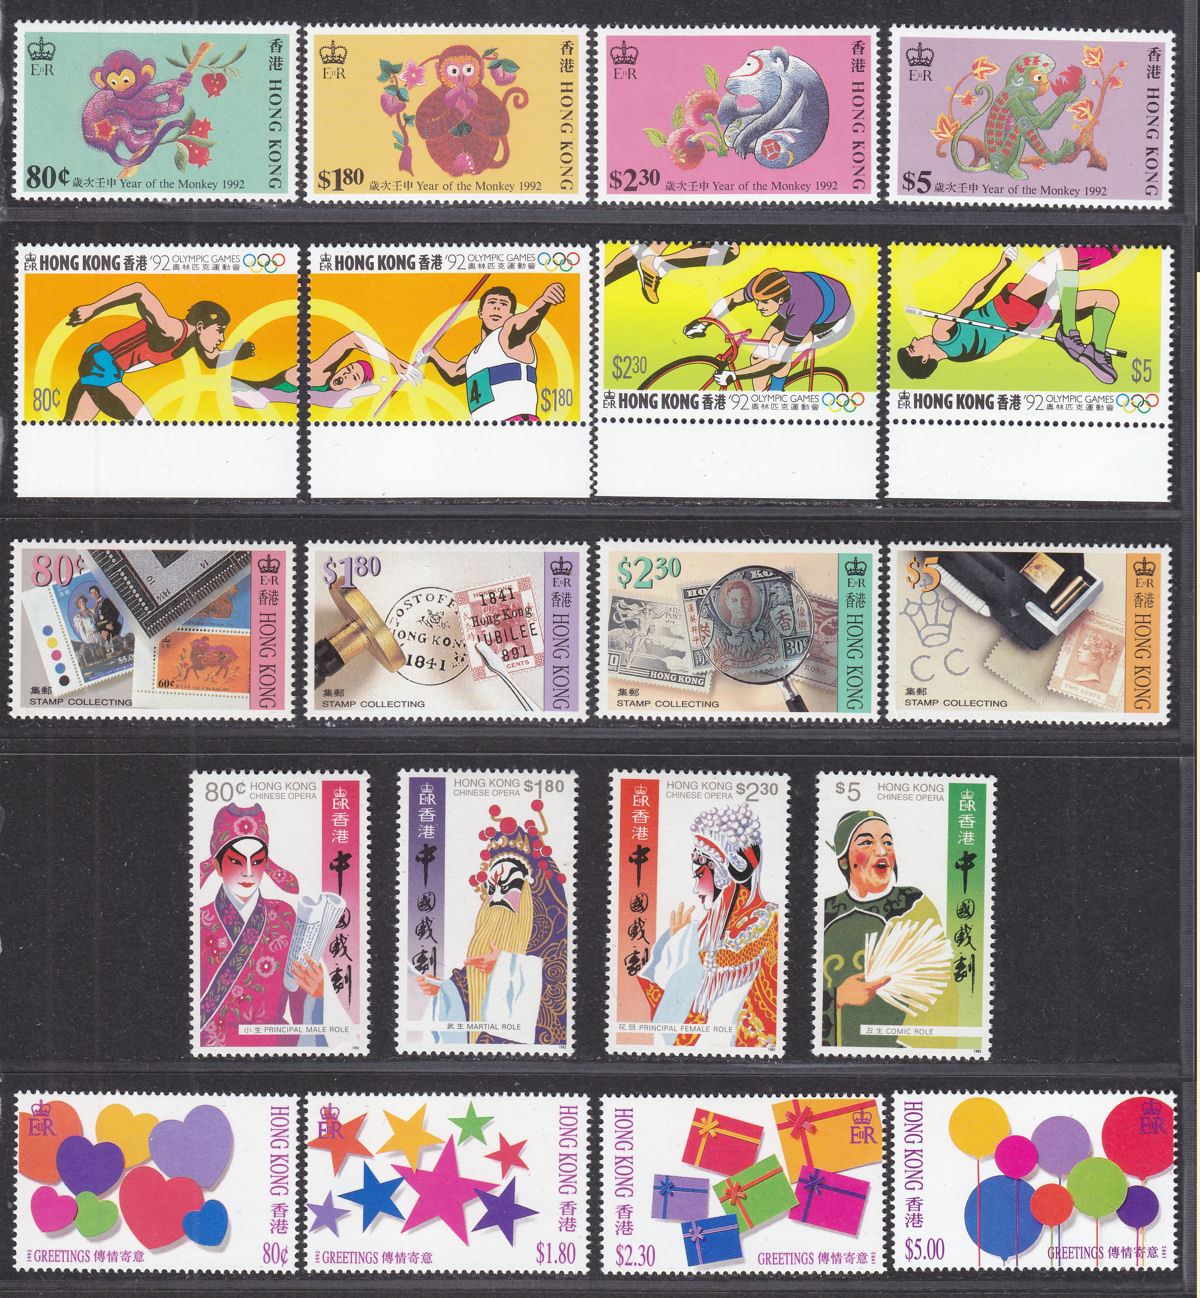 Hong Kong 1992 QEII Selection UM Mint inc Monkey, Olympics, Opera, Greetings